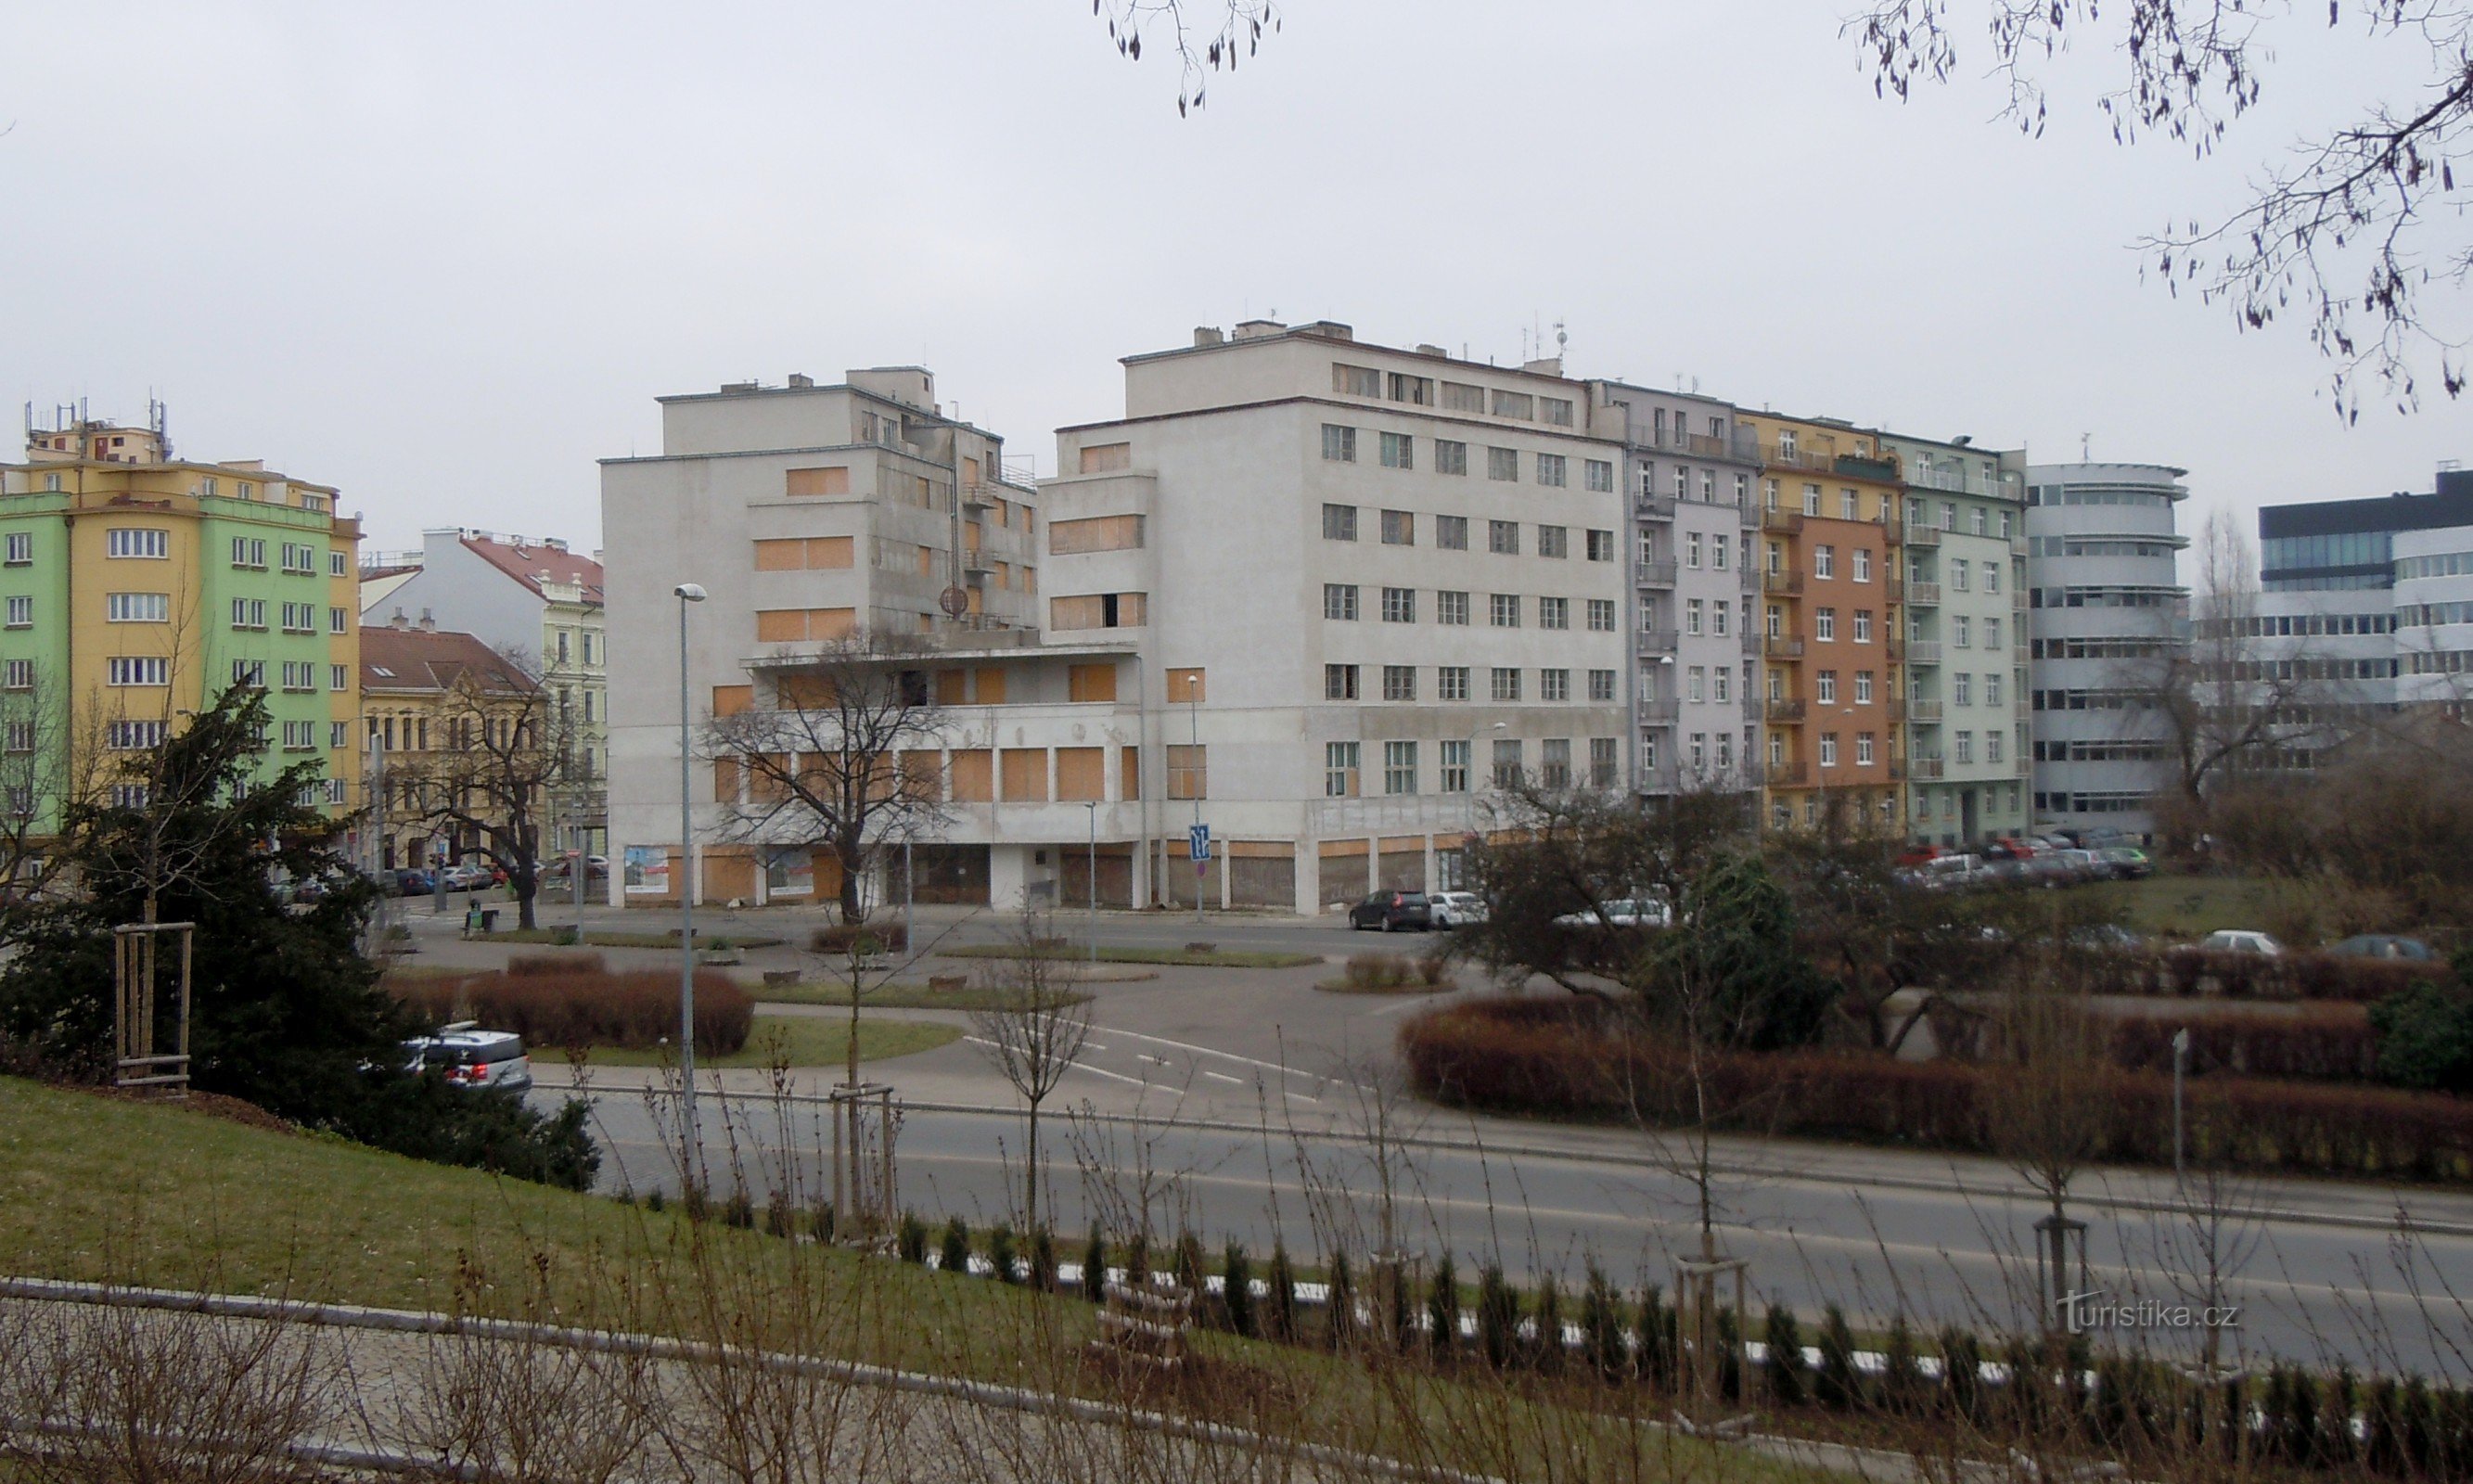 Svět palace, view across Elsnic Square